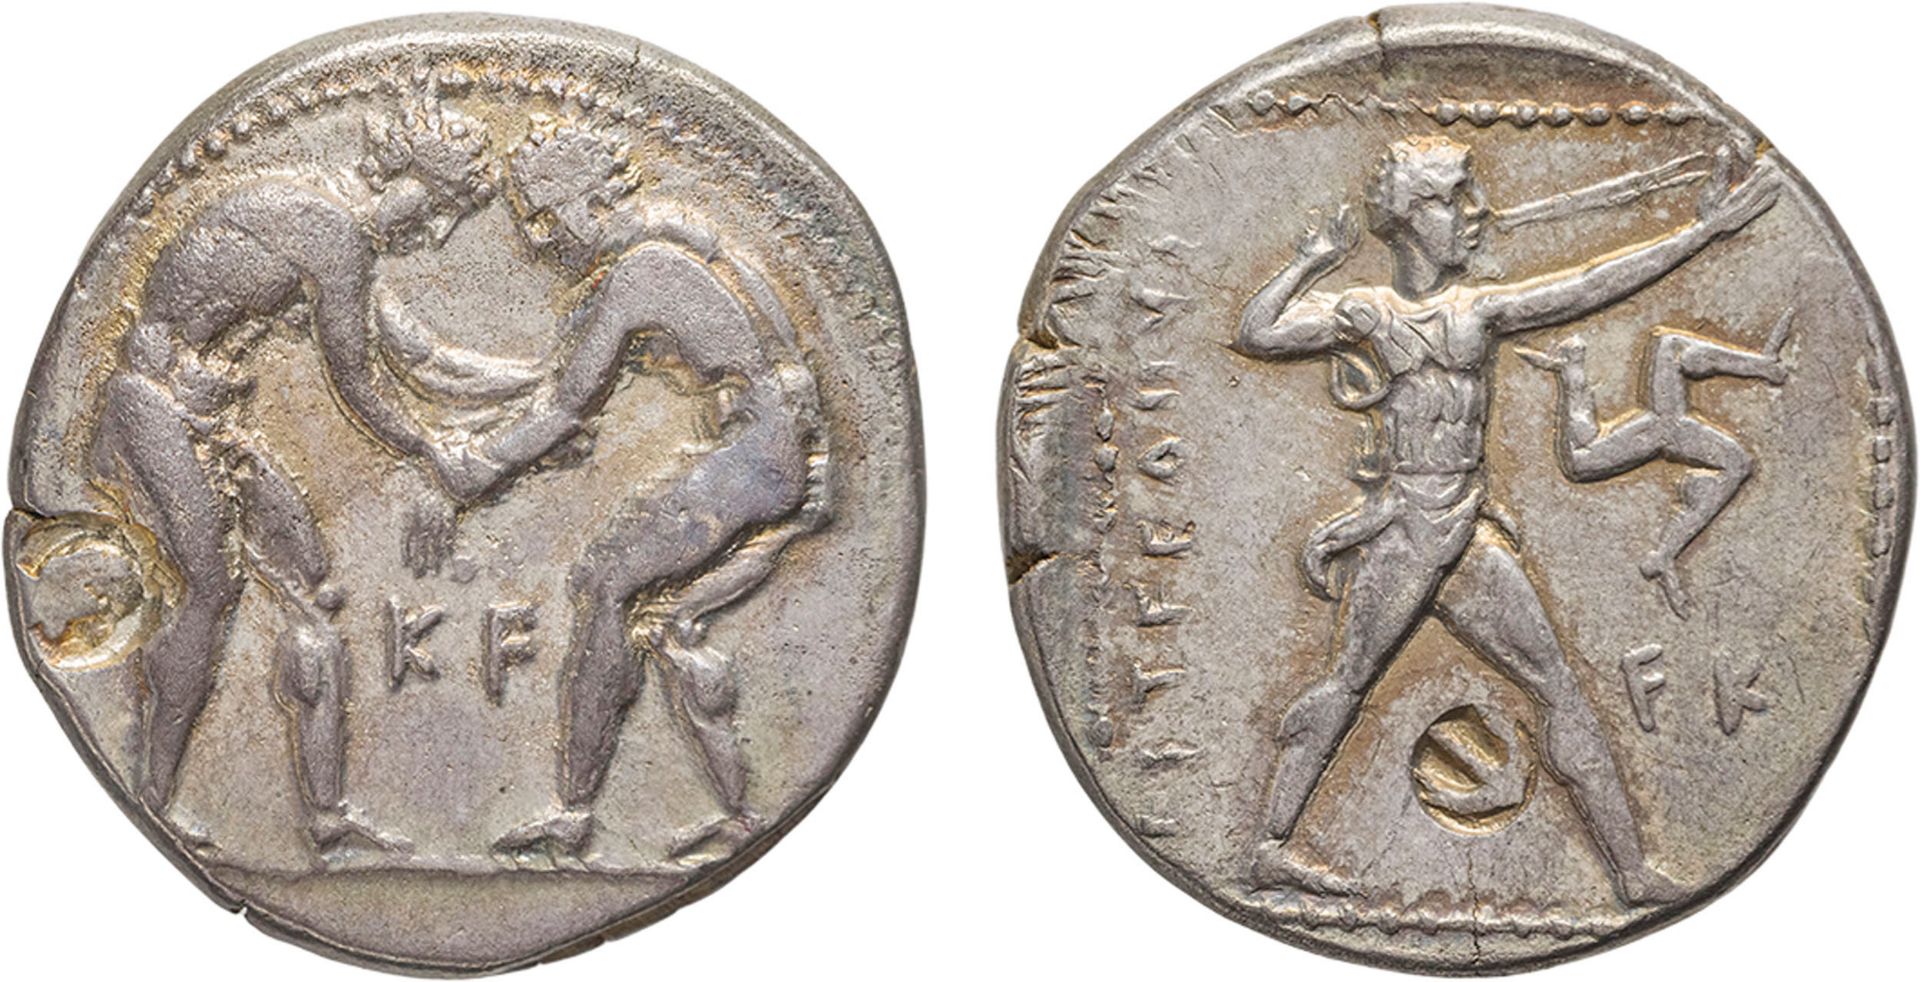 MONETE GRECHE. PAMPHILIA. ASPENDOS (CIRCA 250 A.C.). STATERE